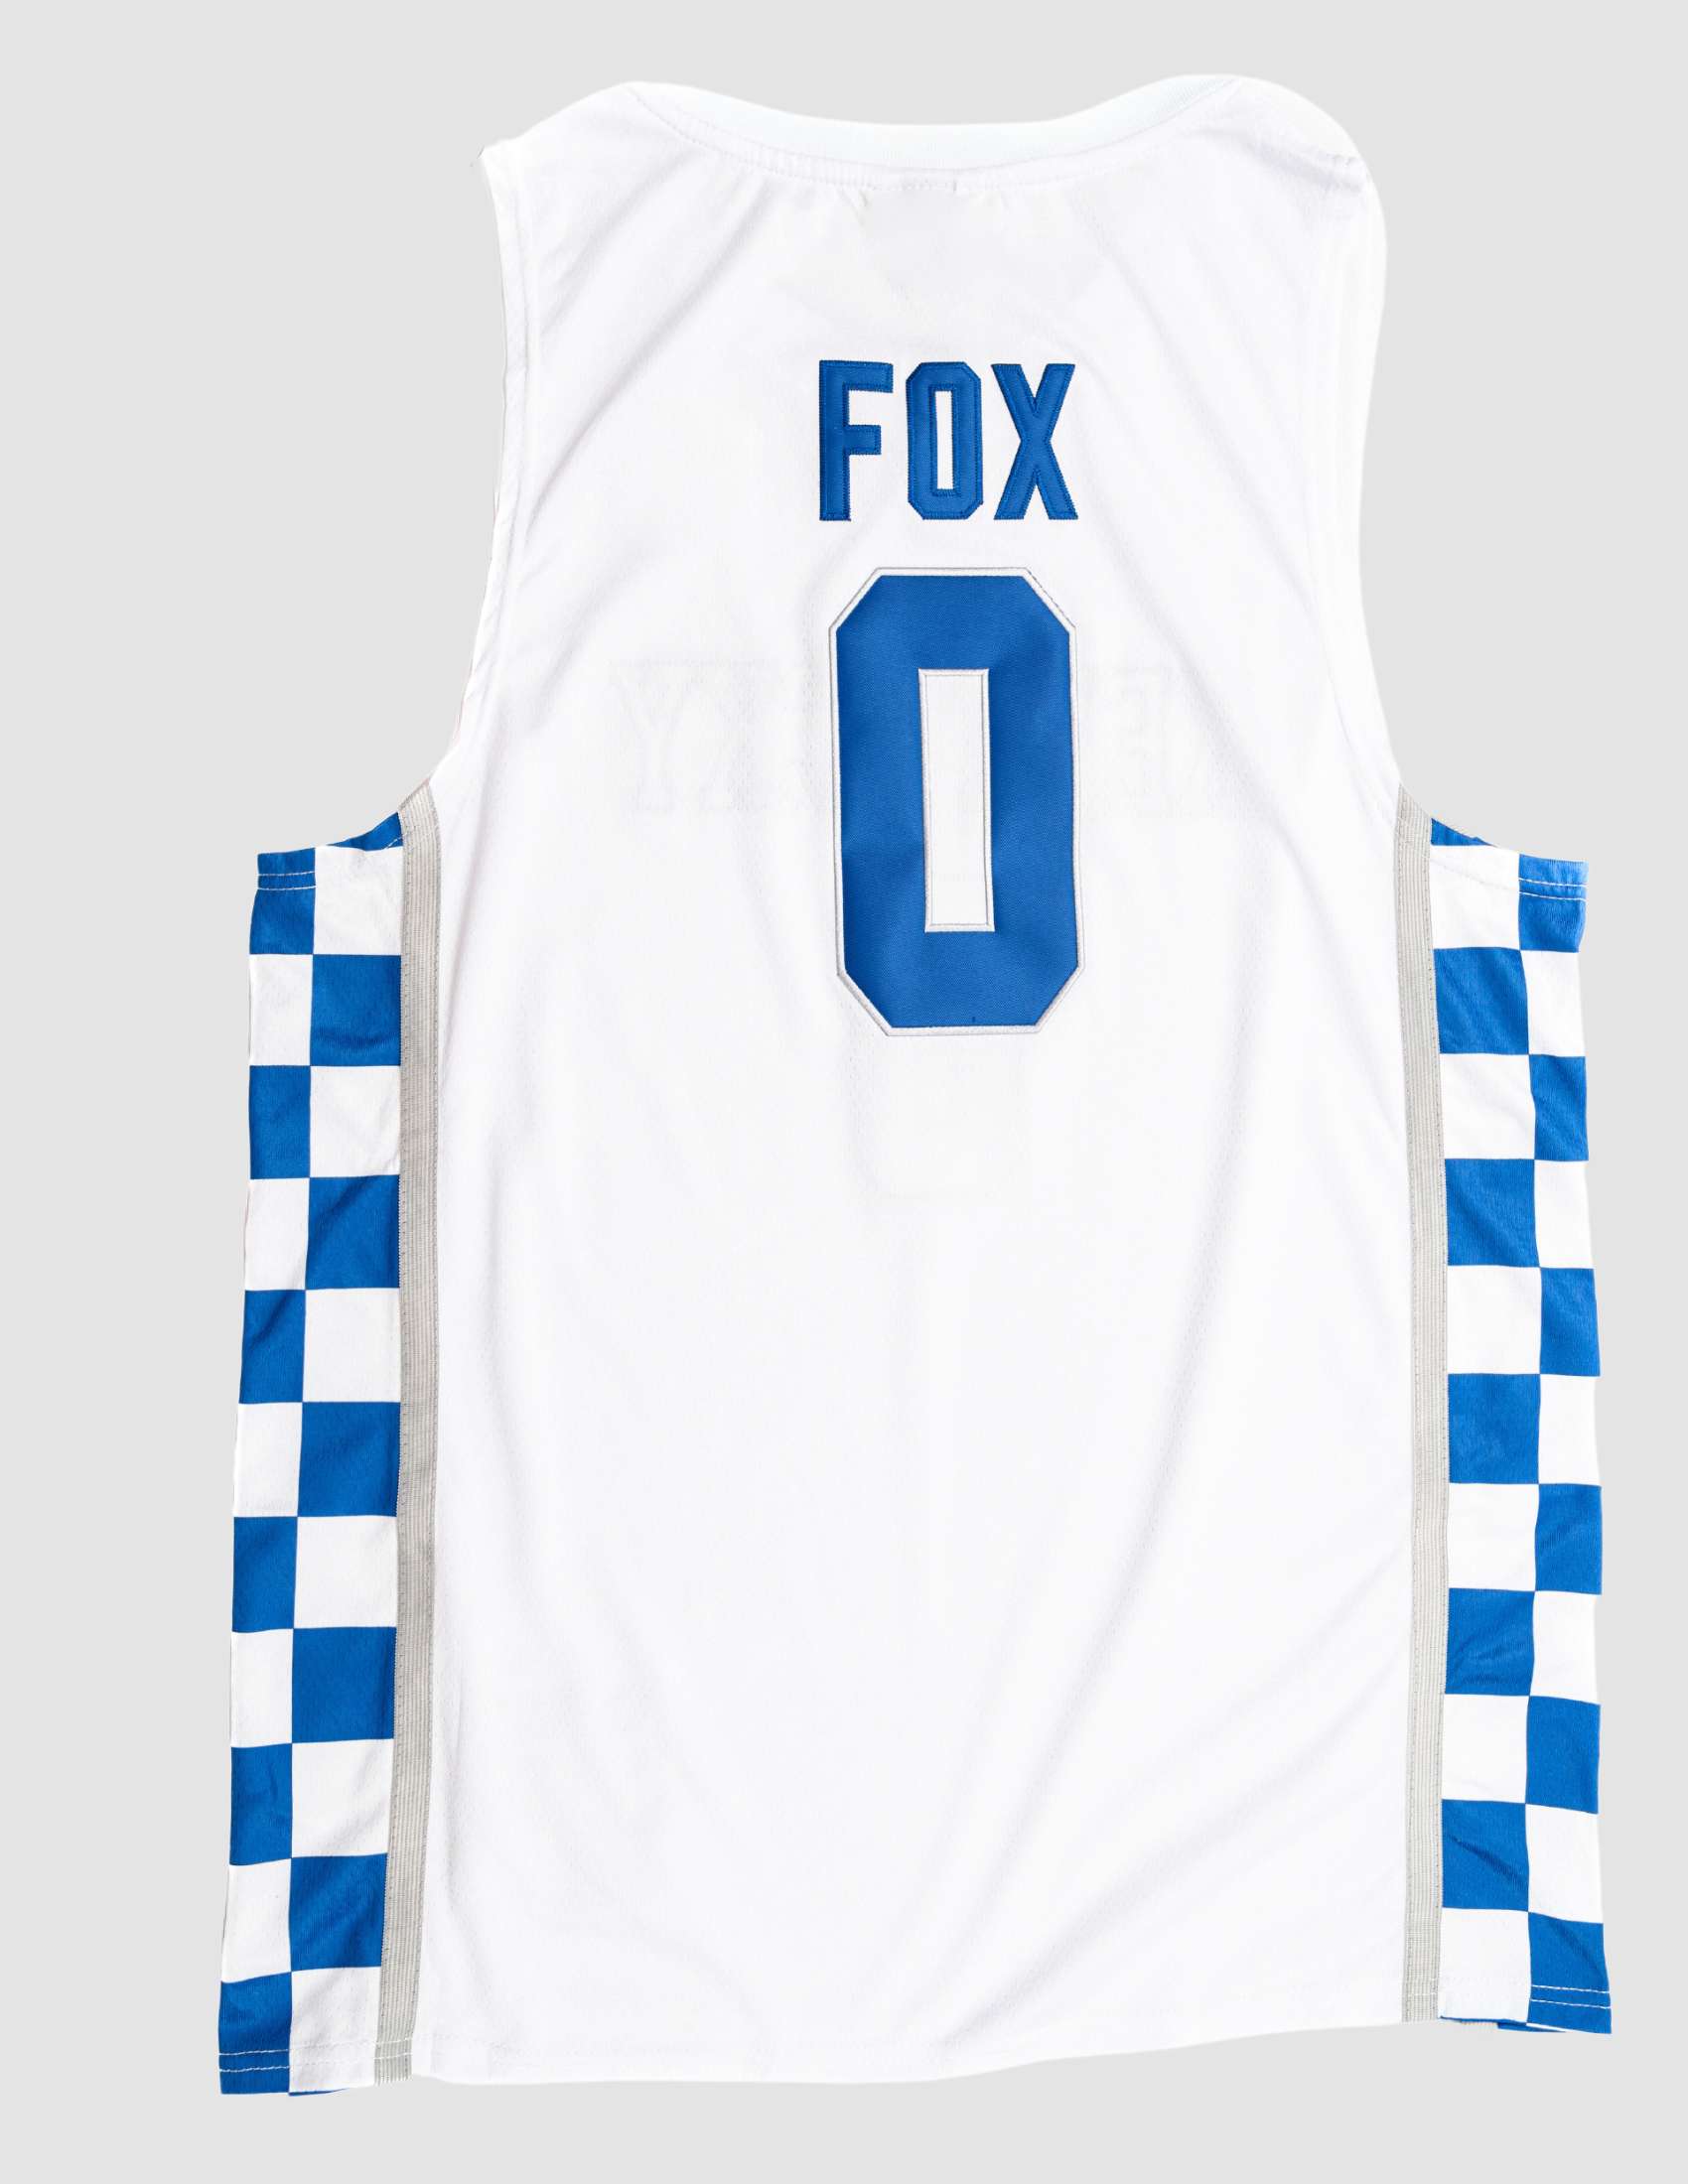 DeAaron Fox 0 Kentucky Wildcats Elite Basketball Youth Jersey - Royal Blue  - Bluefink